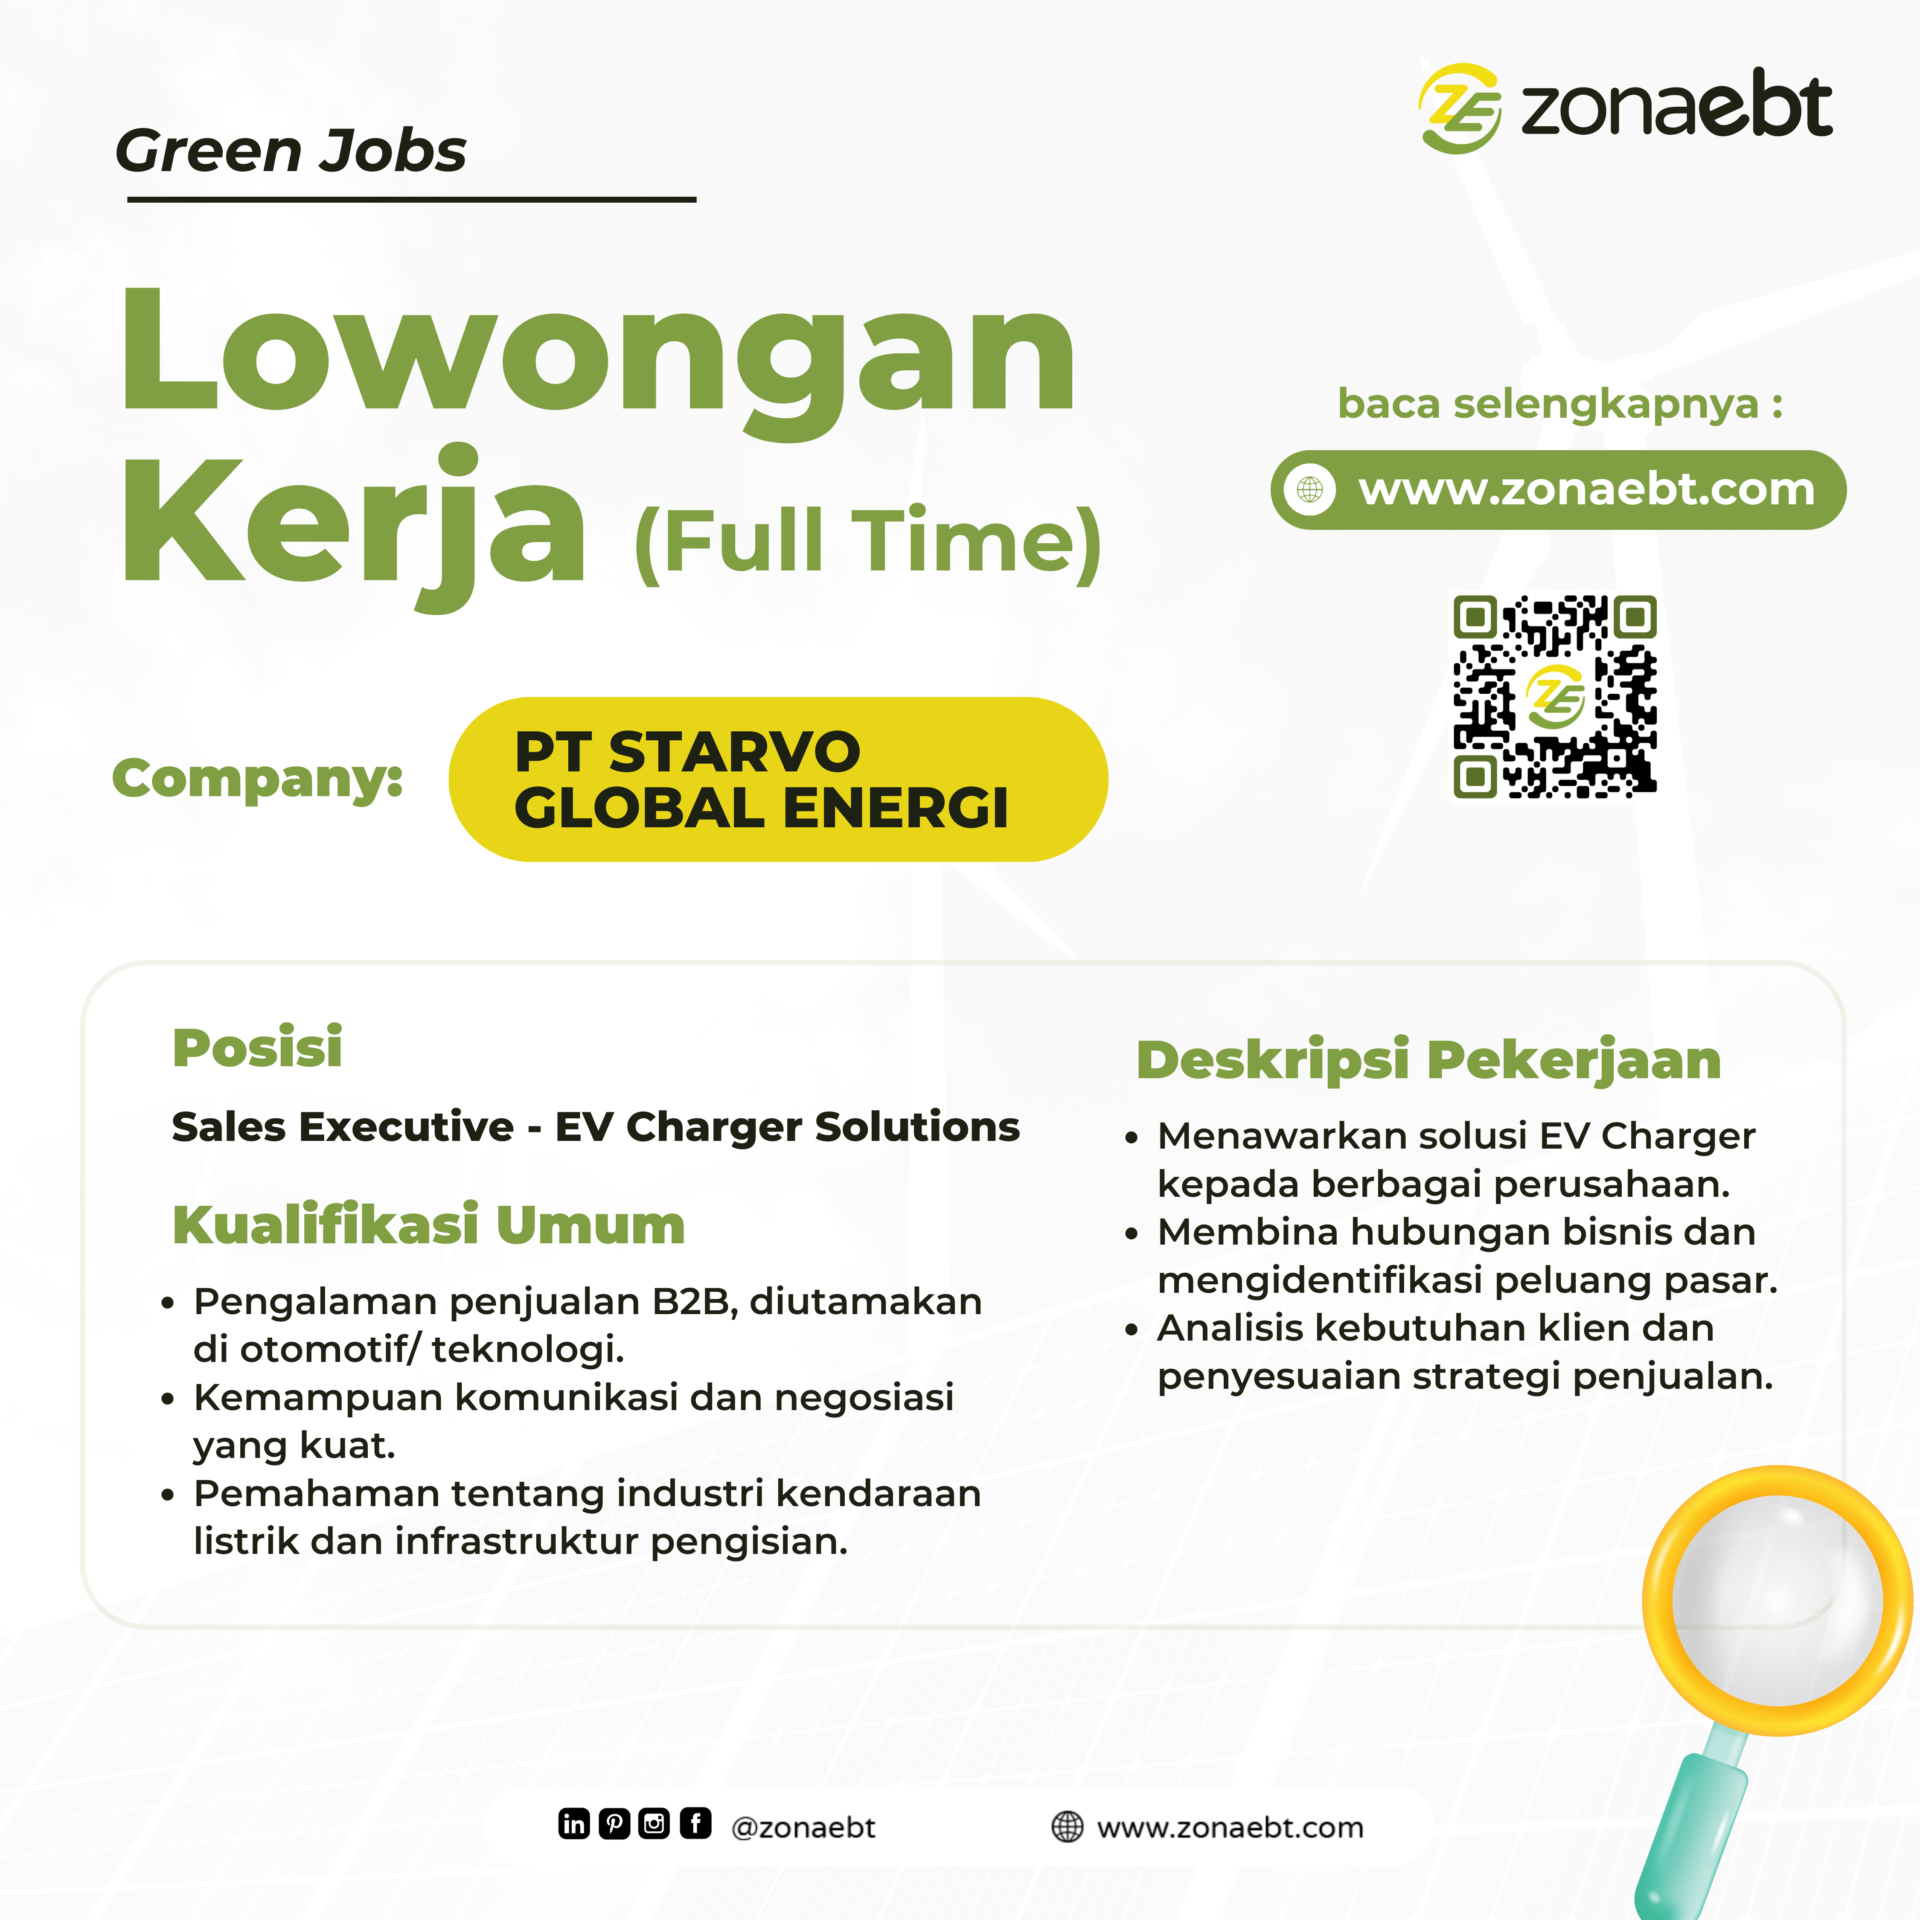 Post Sales Executive green jobs zonaebt.com